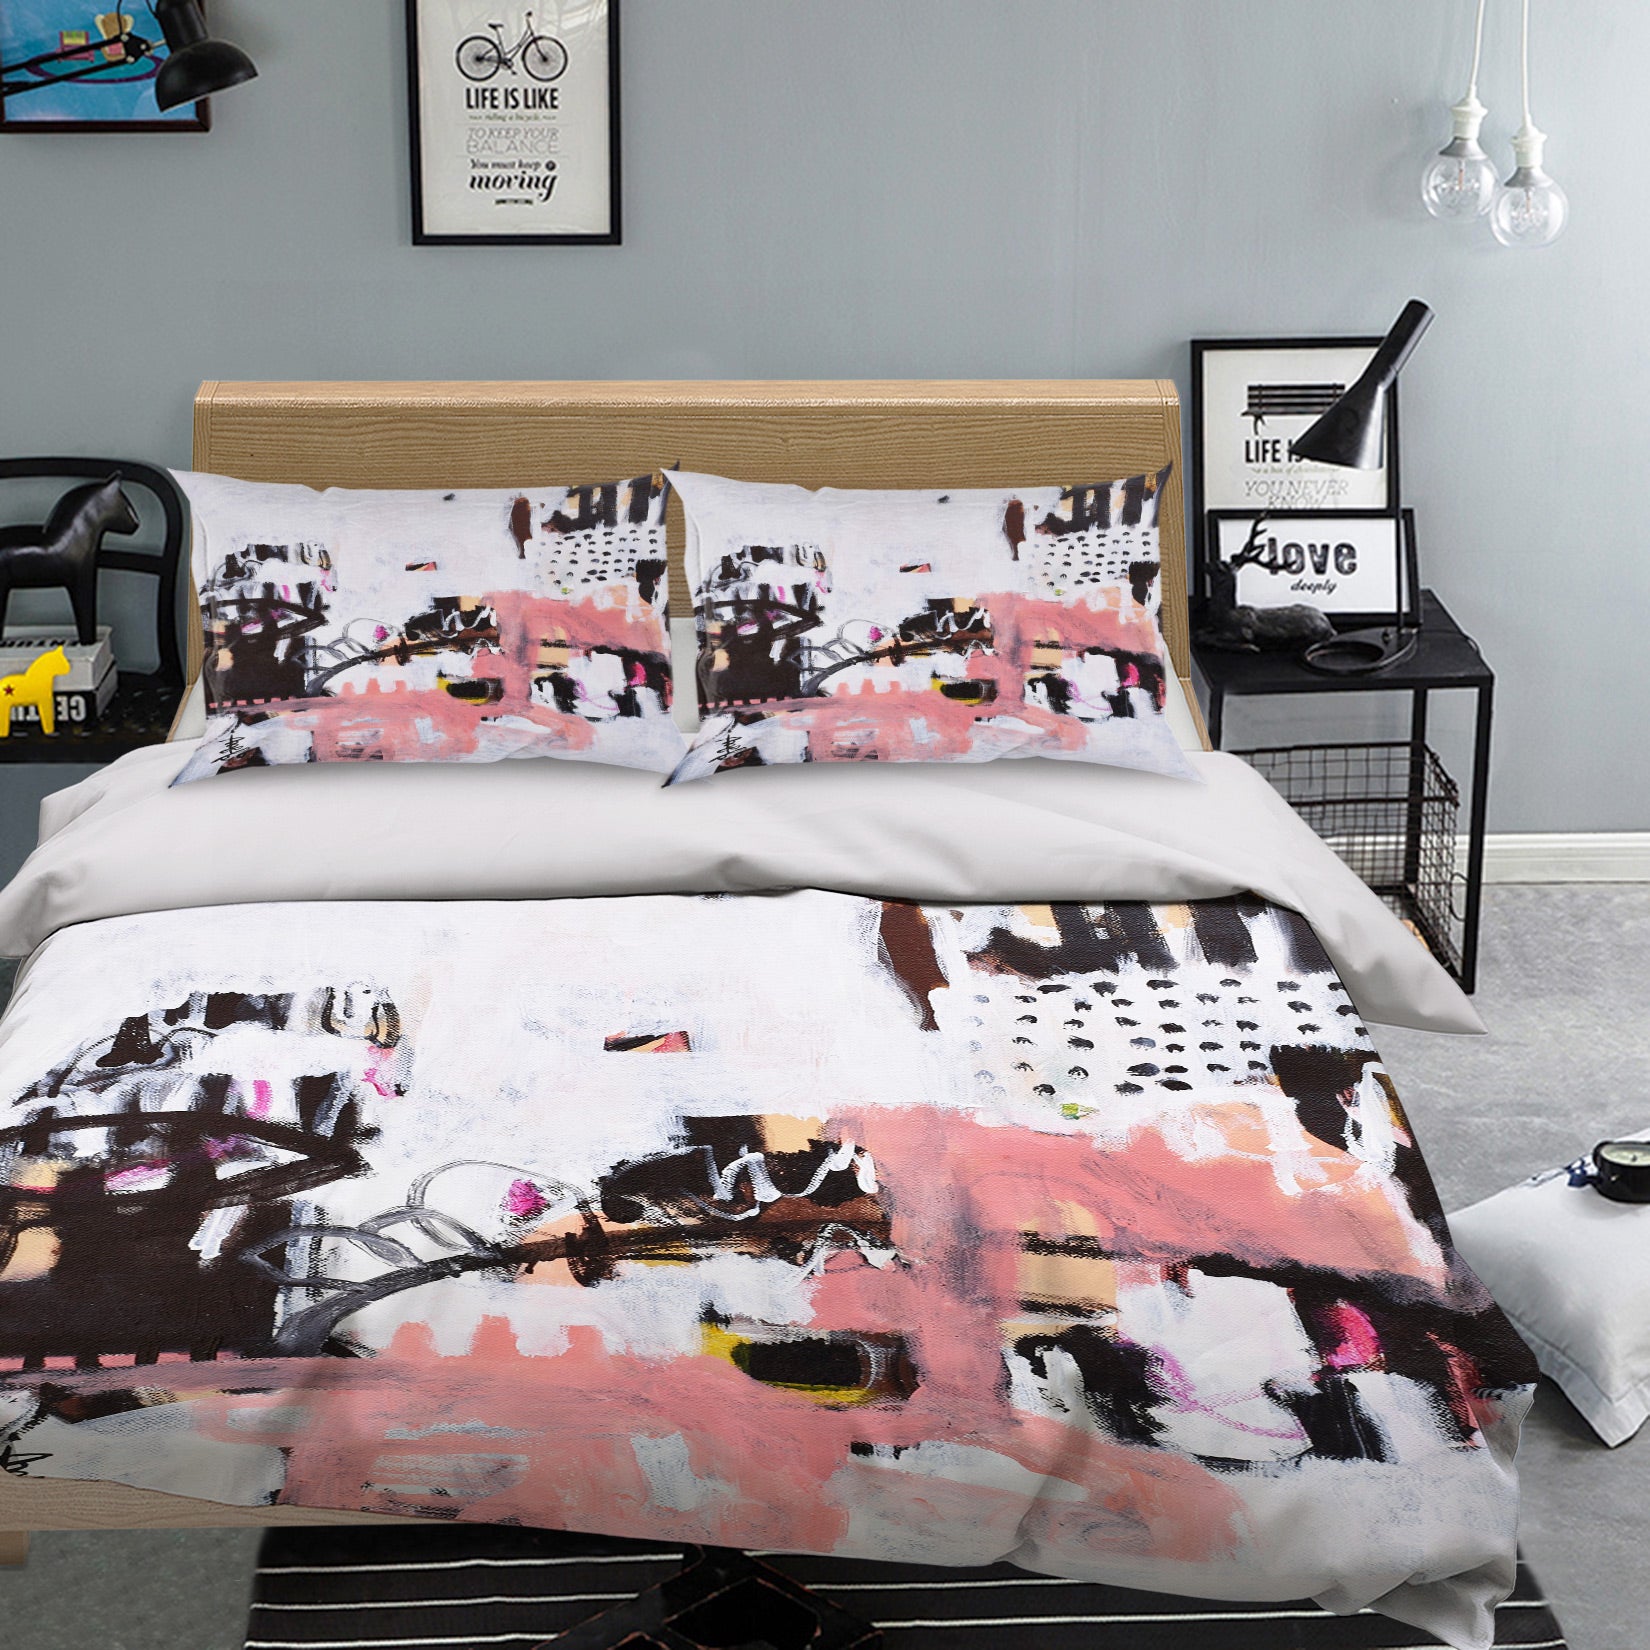 3D Graffiti Pink 1205 Misako Chida Bedding Bed Pillowcases Quilt Cover Duvet Cover